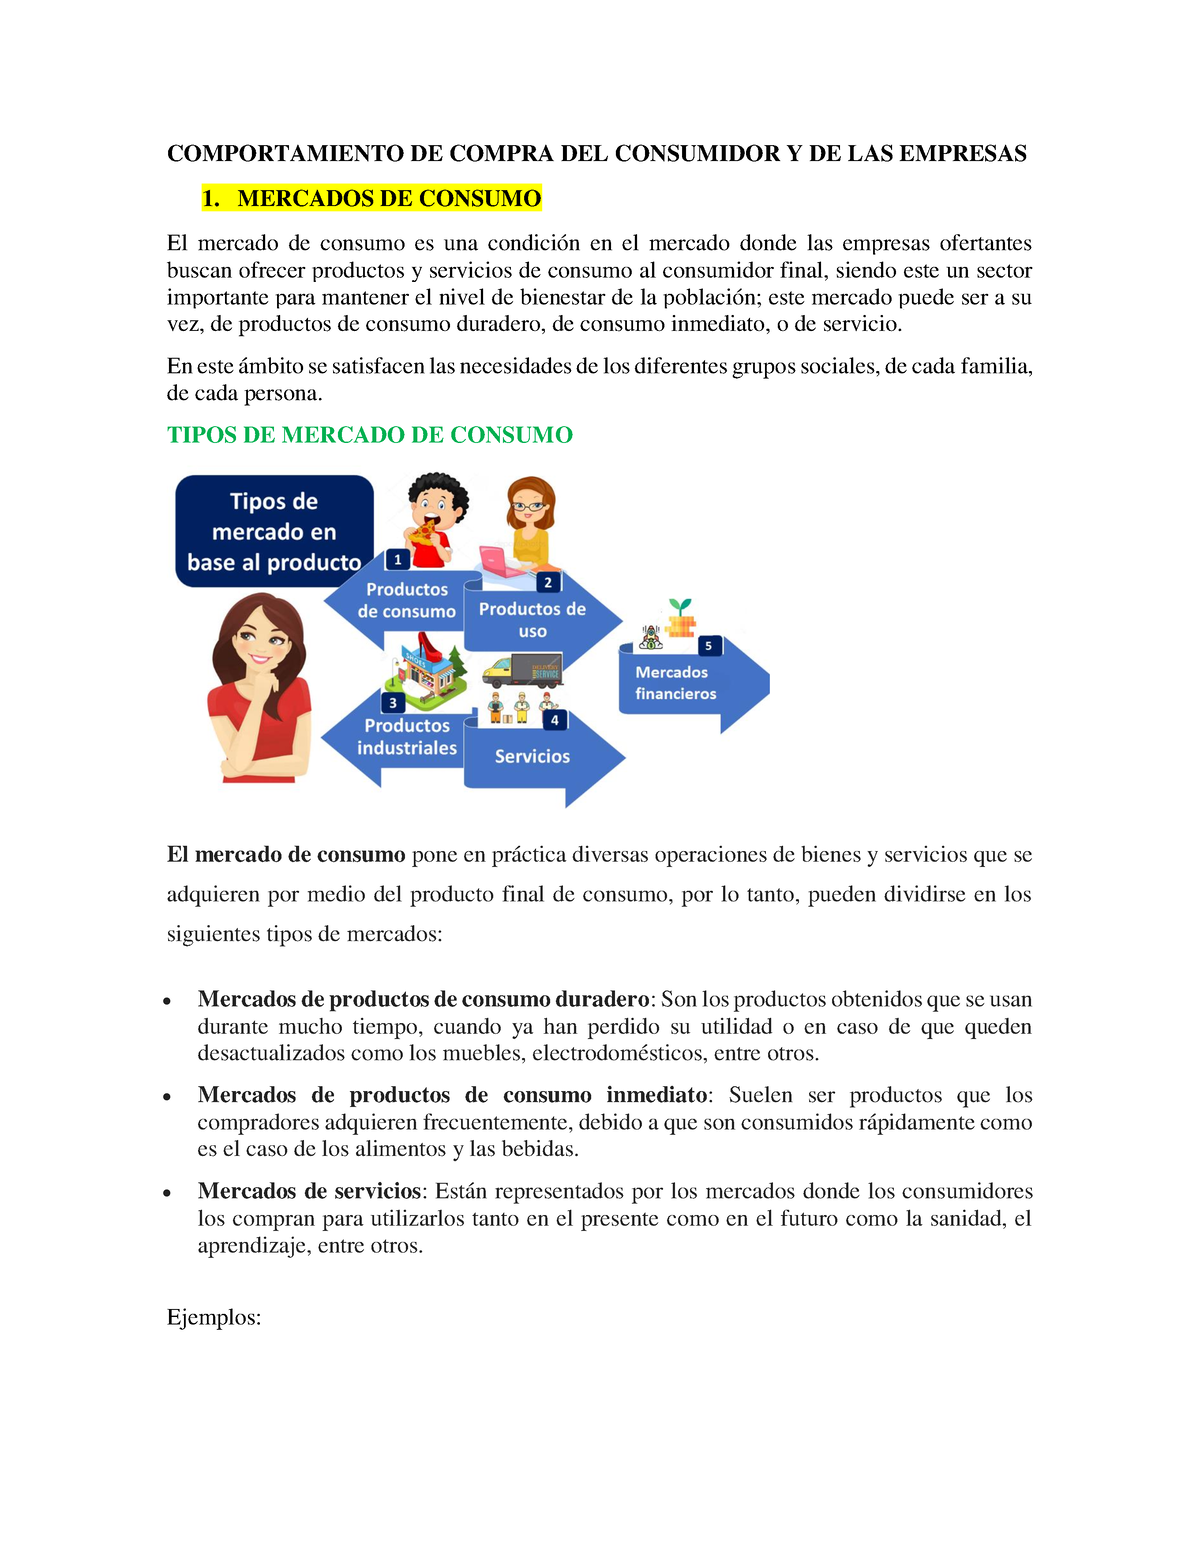 Mercadotecnia-Grupo N5 - COMPORTAMIENTO DE COMPRA DEL CONSUMIDOR Y